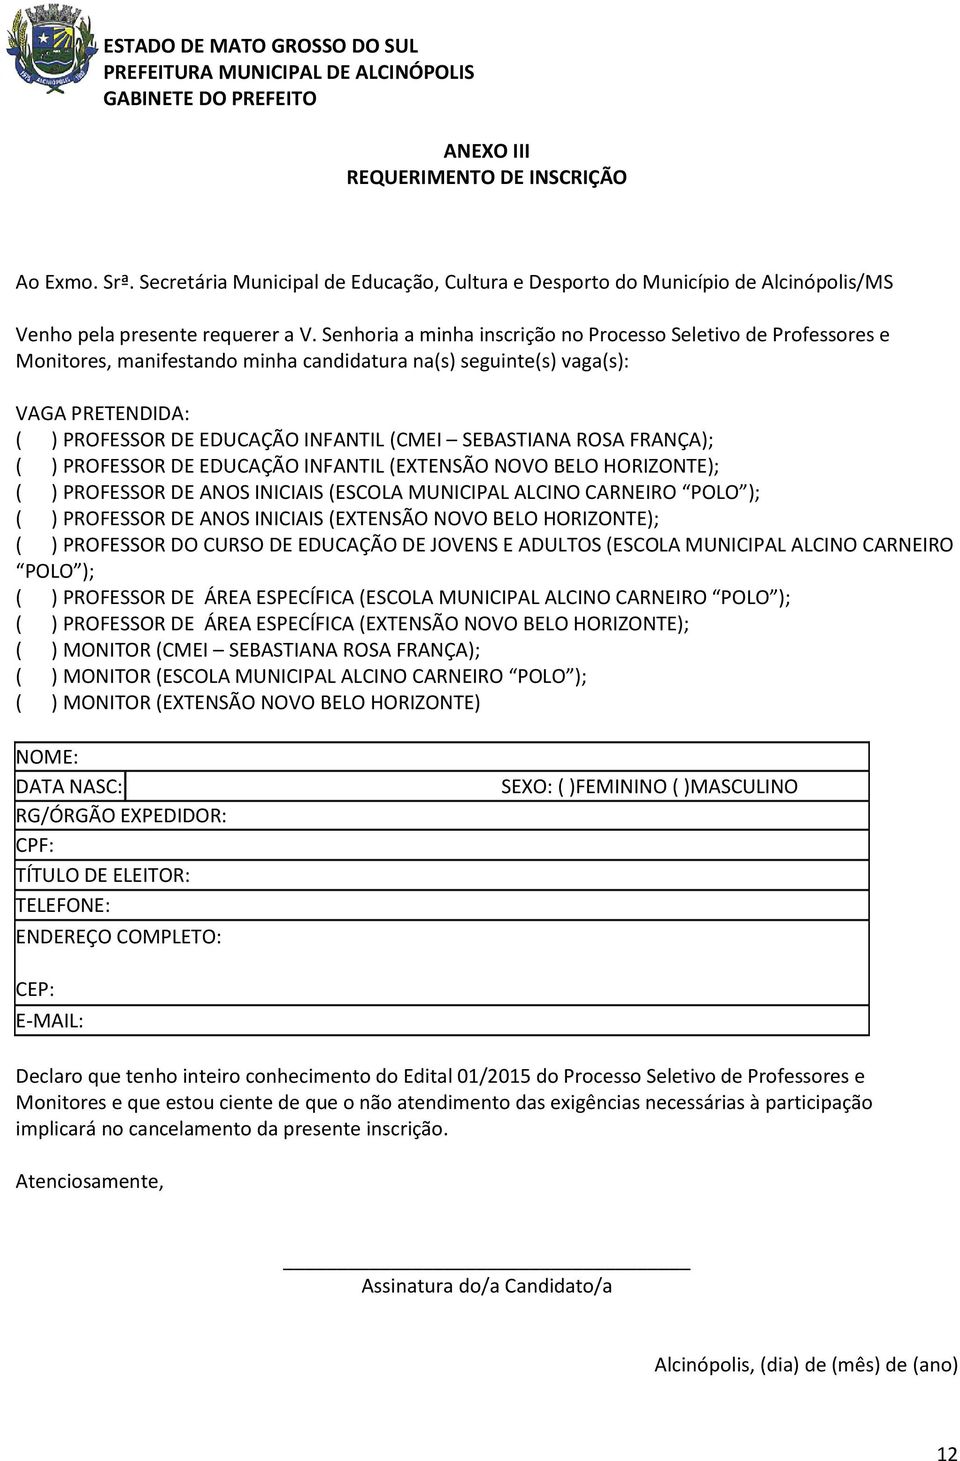 SEBASTIANA ROSA FRANÇA); ( ) PROFESSOR DE EDUCAÇÃO INFANTIL (EXTENSÃO NOVO BELO HORIZONTE); ( ) PROFESSOR DE ANOS INICIAIS (ESCOLA MUNICIPAL ALCINO CARNEIRO POLO ); ( ) PROFESSOR DE ANOS INICIAIS